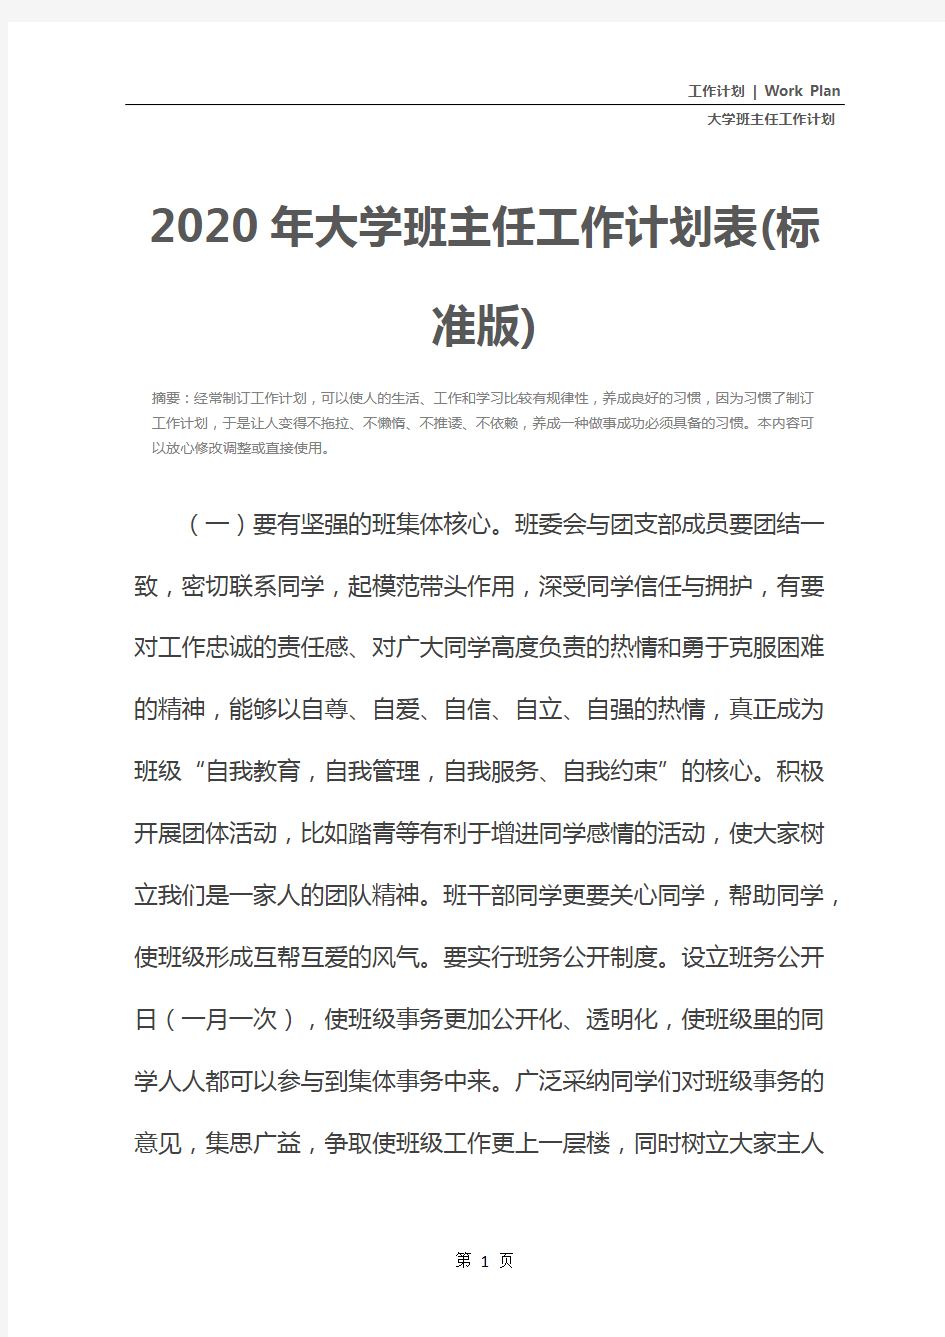 2020年大学班主任工作计划表(标准版)